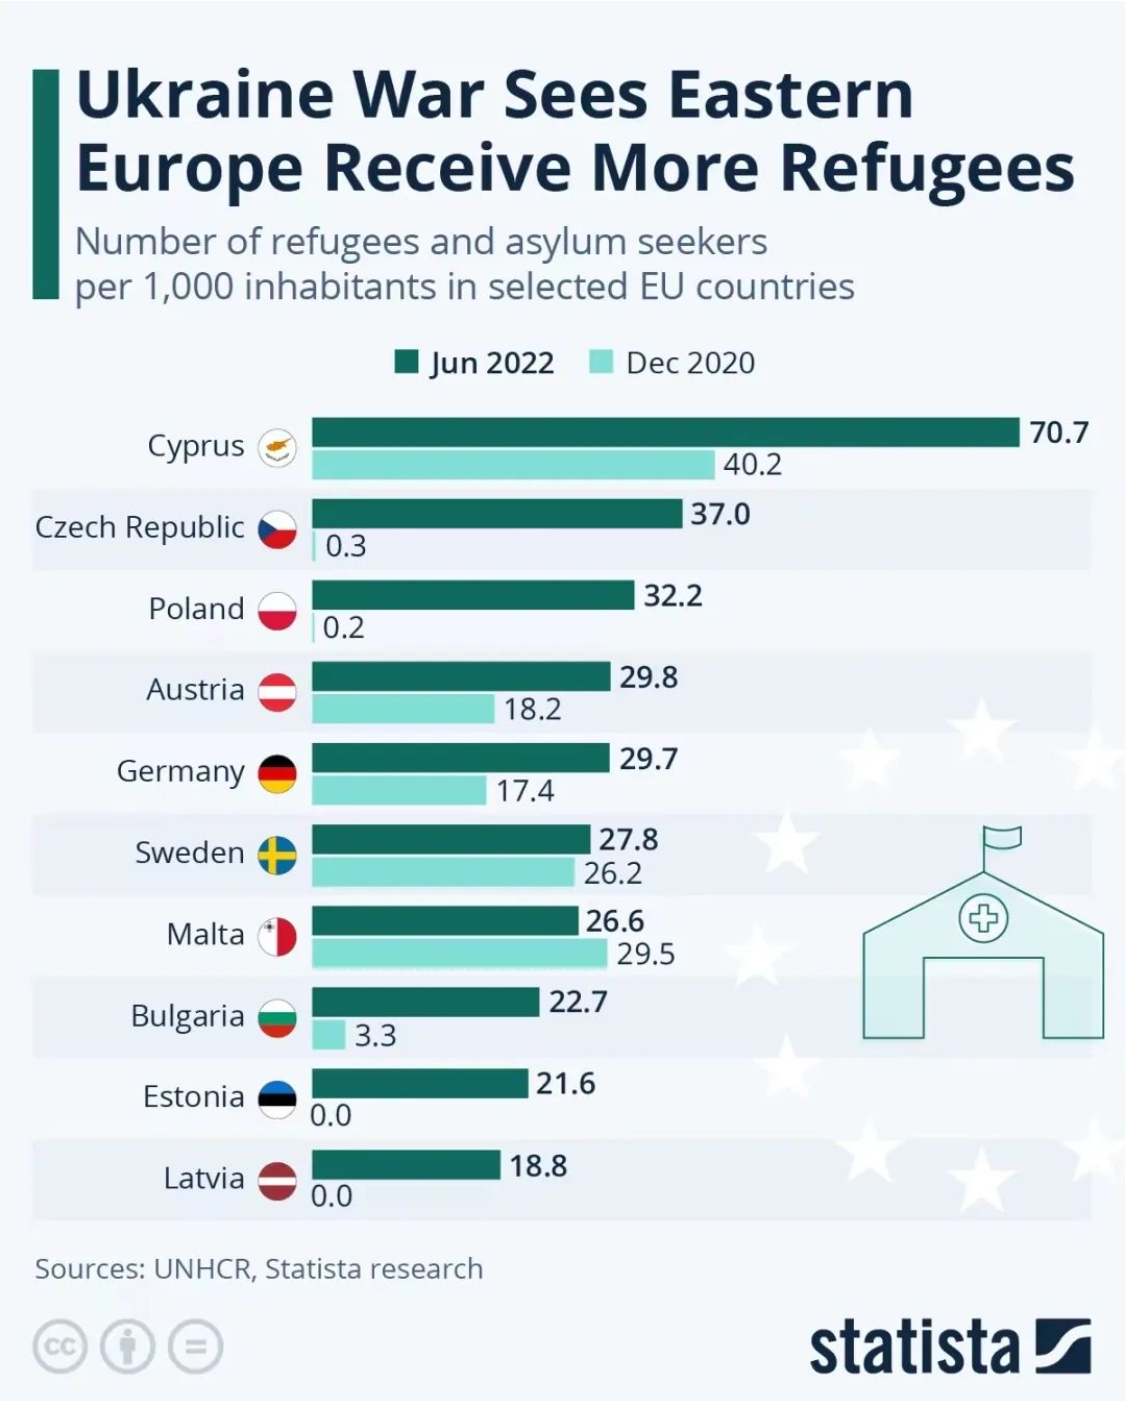 哪个国家接收了"更多"的乌克兰难民？提供了更多的援助？